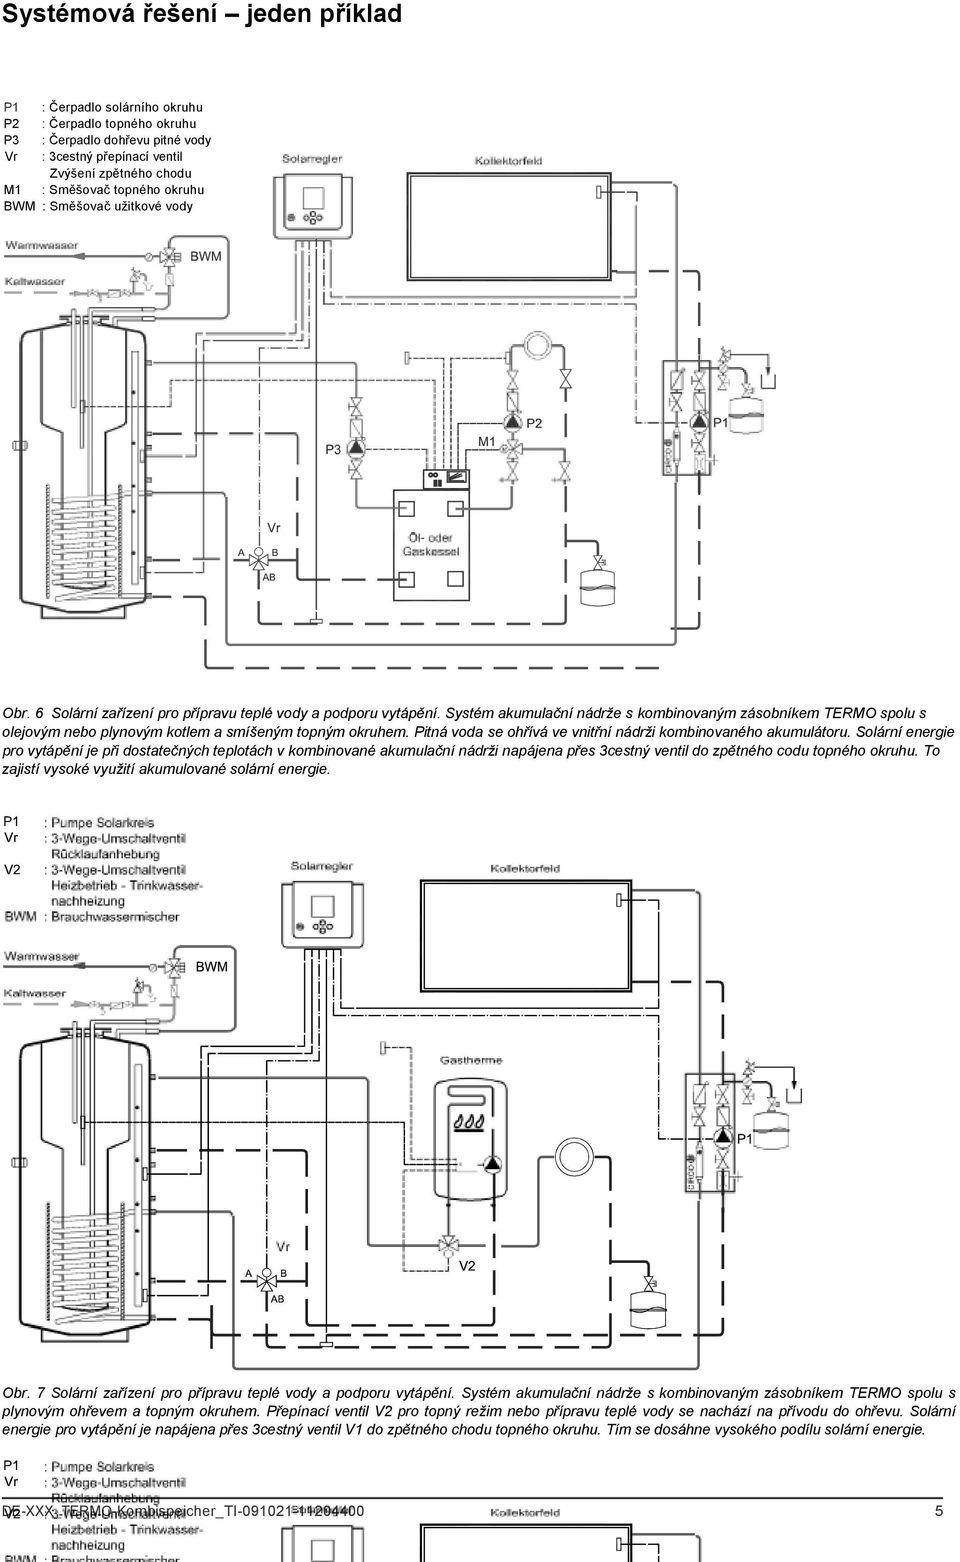 Systém akumulační nádrže s kombinovaným zásobníkem TERMO spolu s olejovým nebo plynovým kotlem a smíšeným topným okruhem. Pitná voda se ohřívá ve vnitřní nádrži kombinovaného akumulátoru.